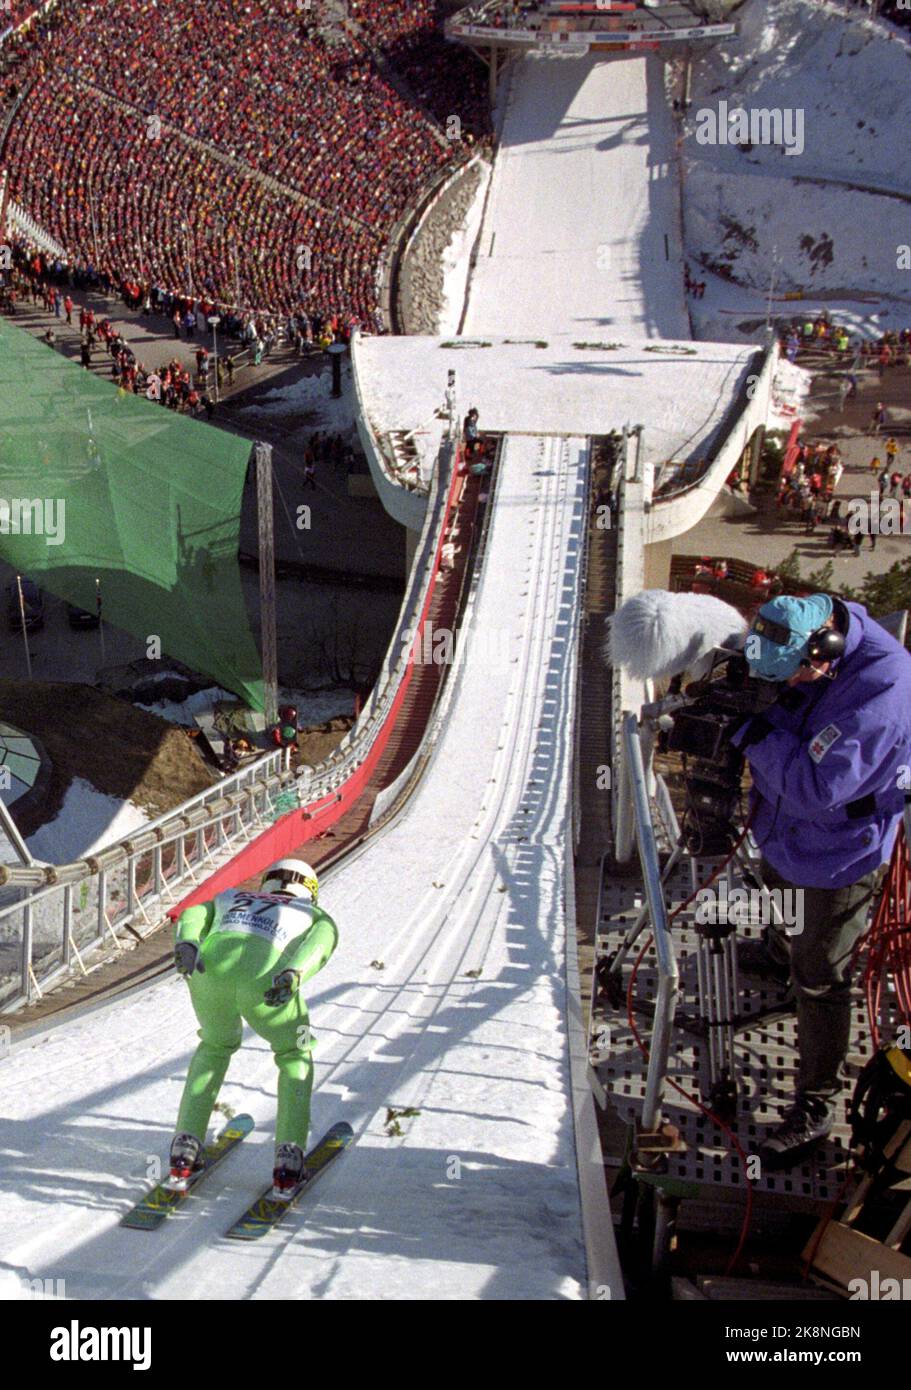 Oslo 19970316: Holmenkollen Ski Festival 1997. Masahiko Harada auf dem Weg nach unten das gehandelte ('Ovarennet') während der WM-Sprung (K 112) in Holmenkollen, 16. März 1997. Er wurde nach einem Sprung von 113,5 bzw. 113 m in den beiden Runden auf Platz 11. (Sieger war Kazuyoshi Funaki, ebenfalls aus Japan.) Foto: Cornelius Poppe / NTB Stockfoto